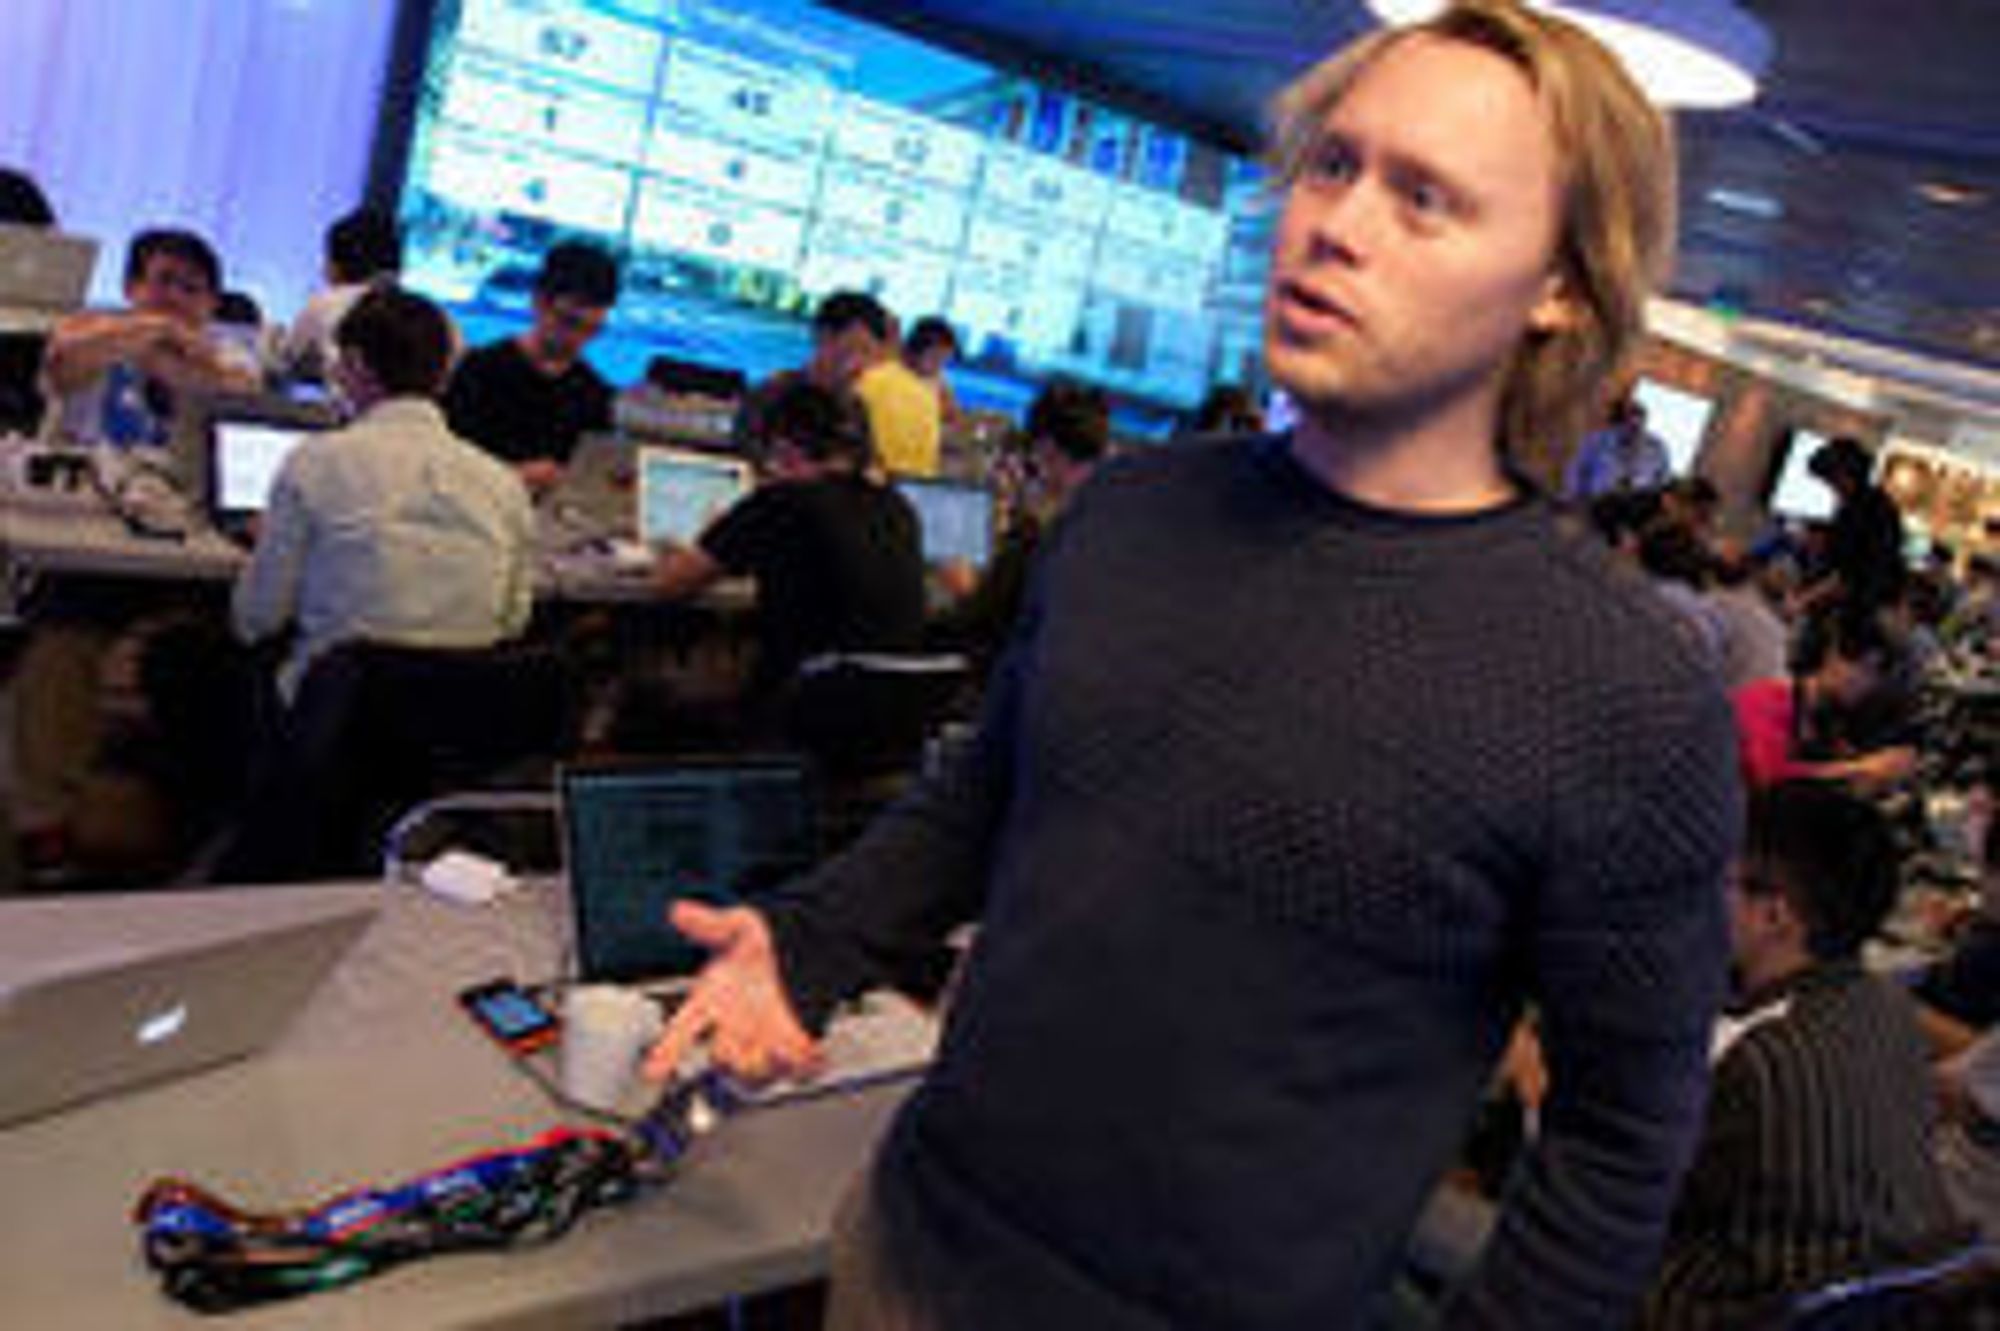 Weben er utviklingsplattformen, forklarer Telenor-utvikler Olav Nymoen. Han er en av få utviklere i Telenor som bidrar med kode til Firefox OS.